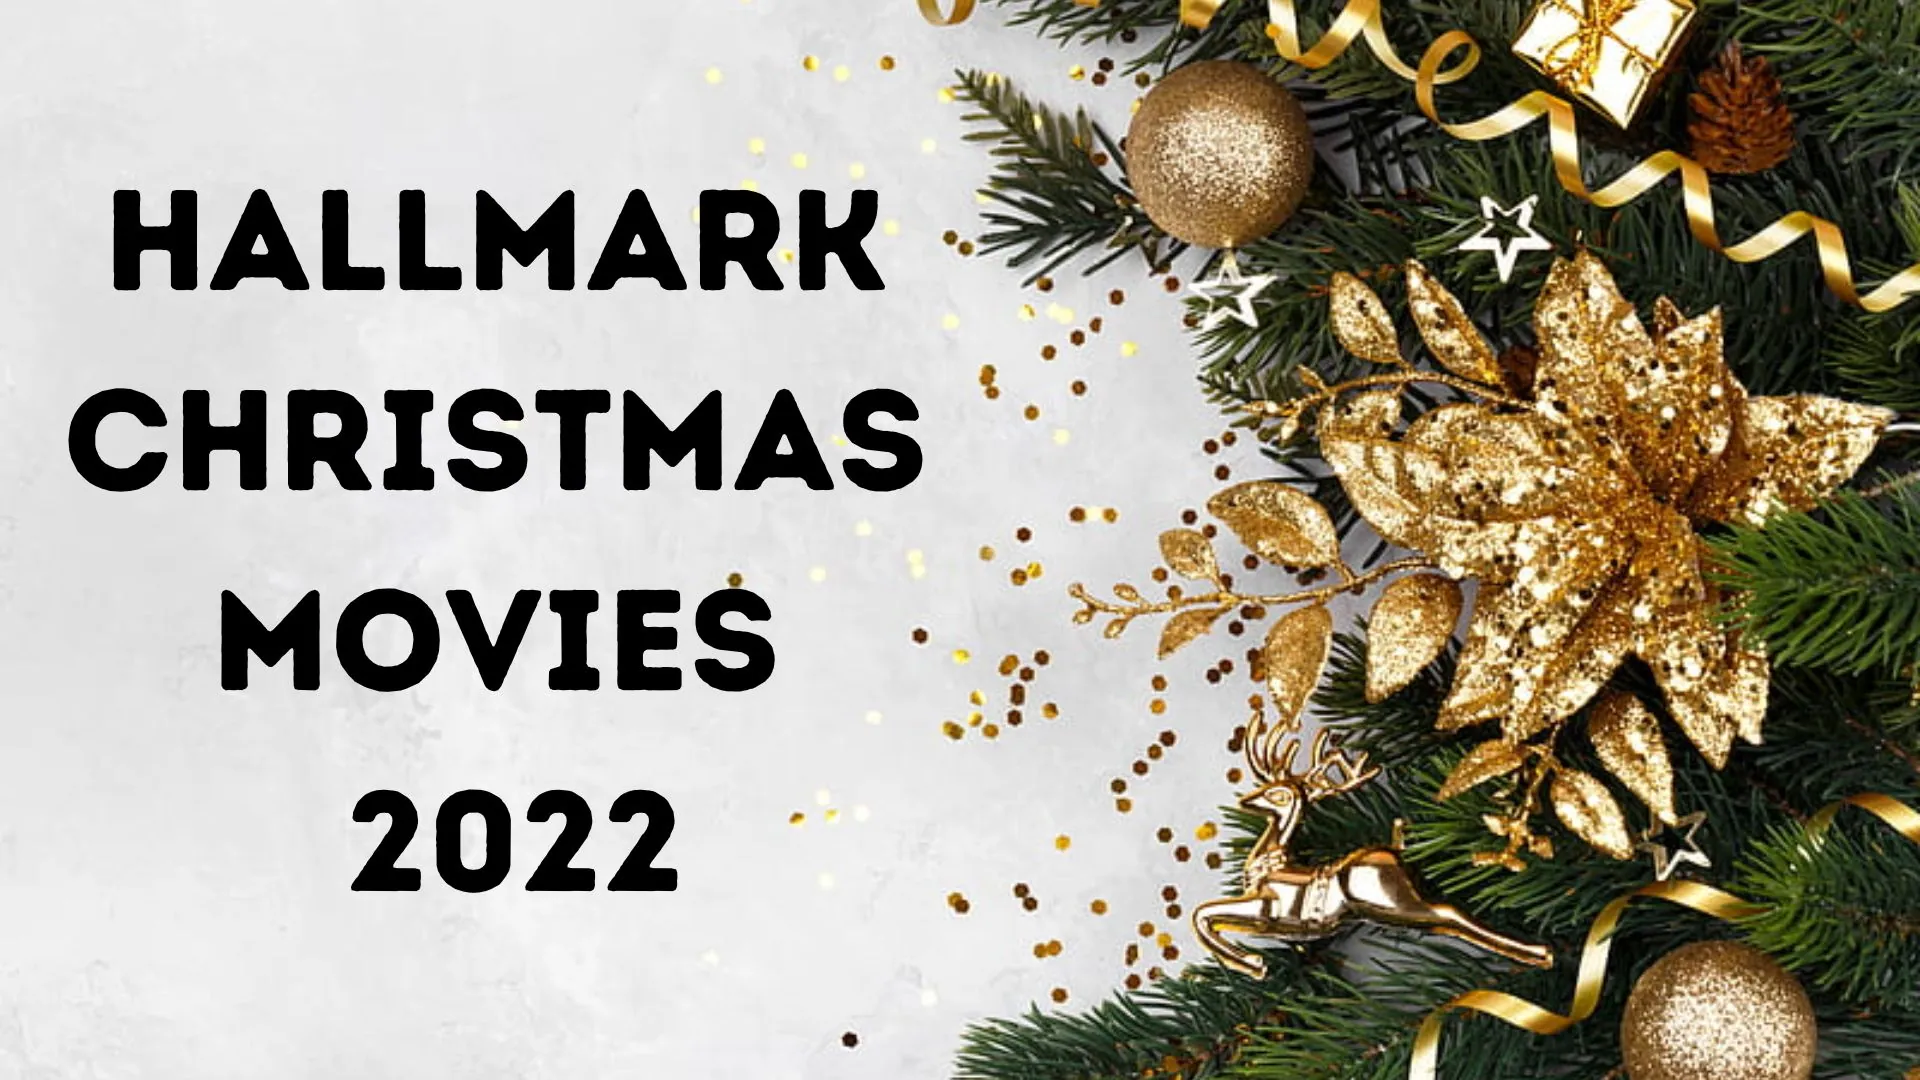 Hallmark Christmas Movies 2022